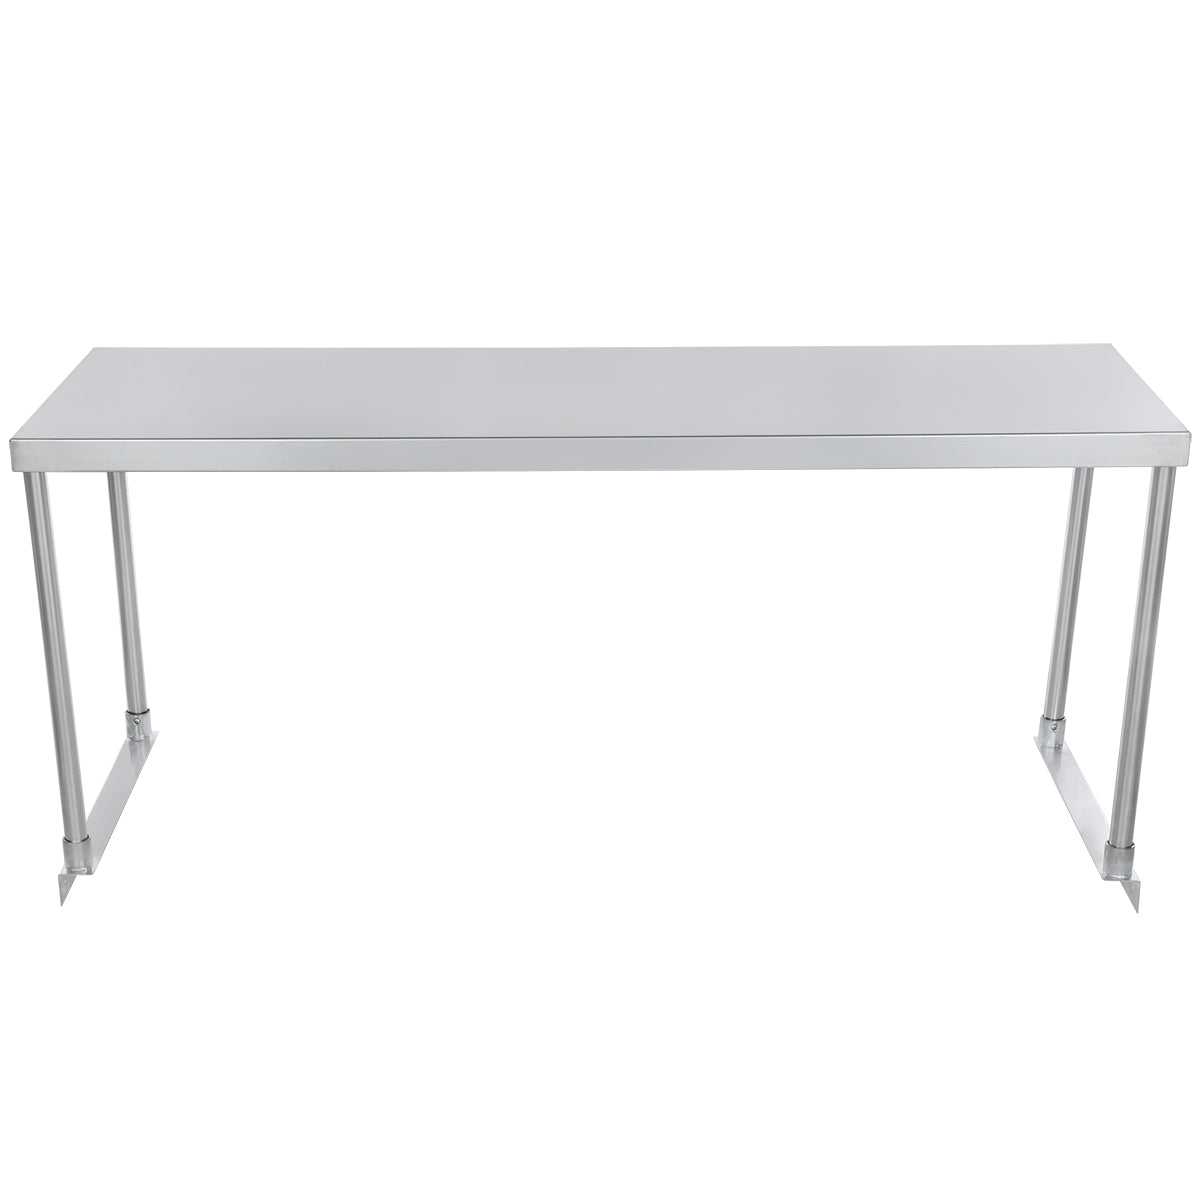 Empura ESOS1848 Overshelf Table-mounted Standard